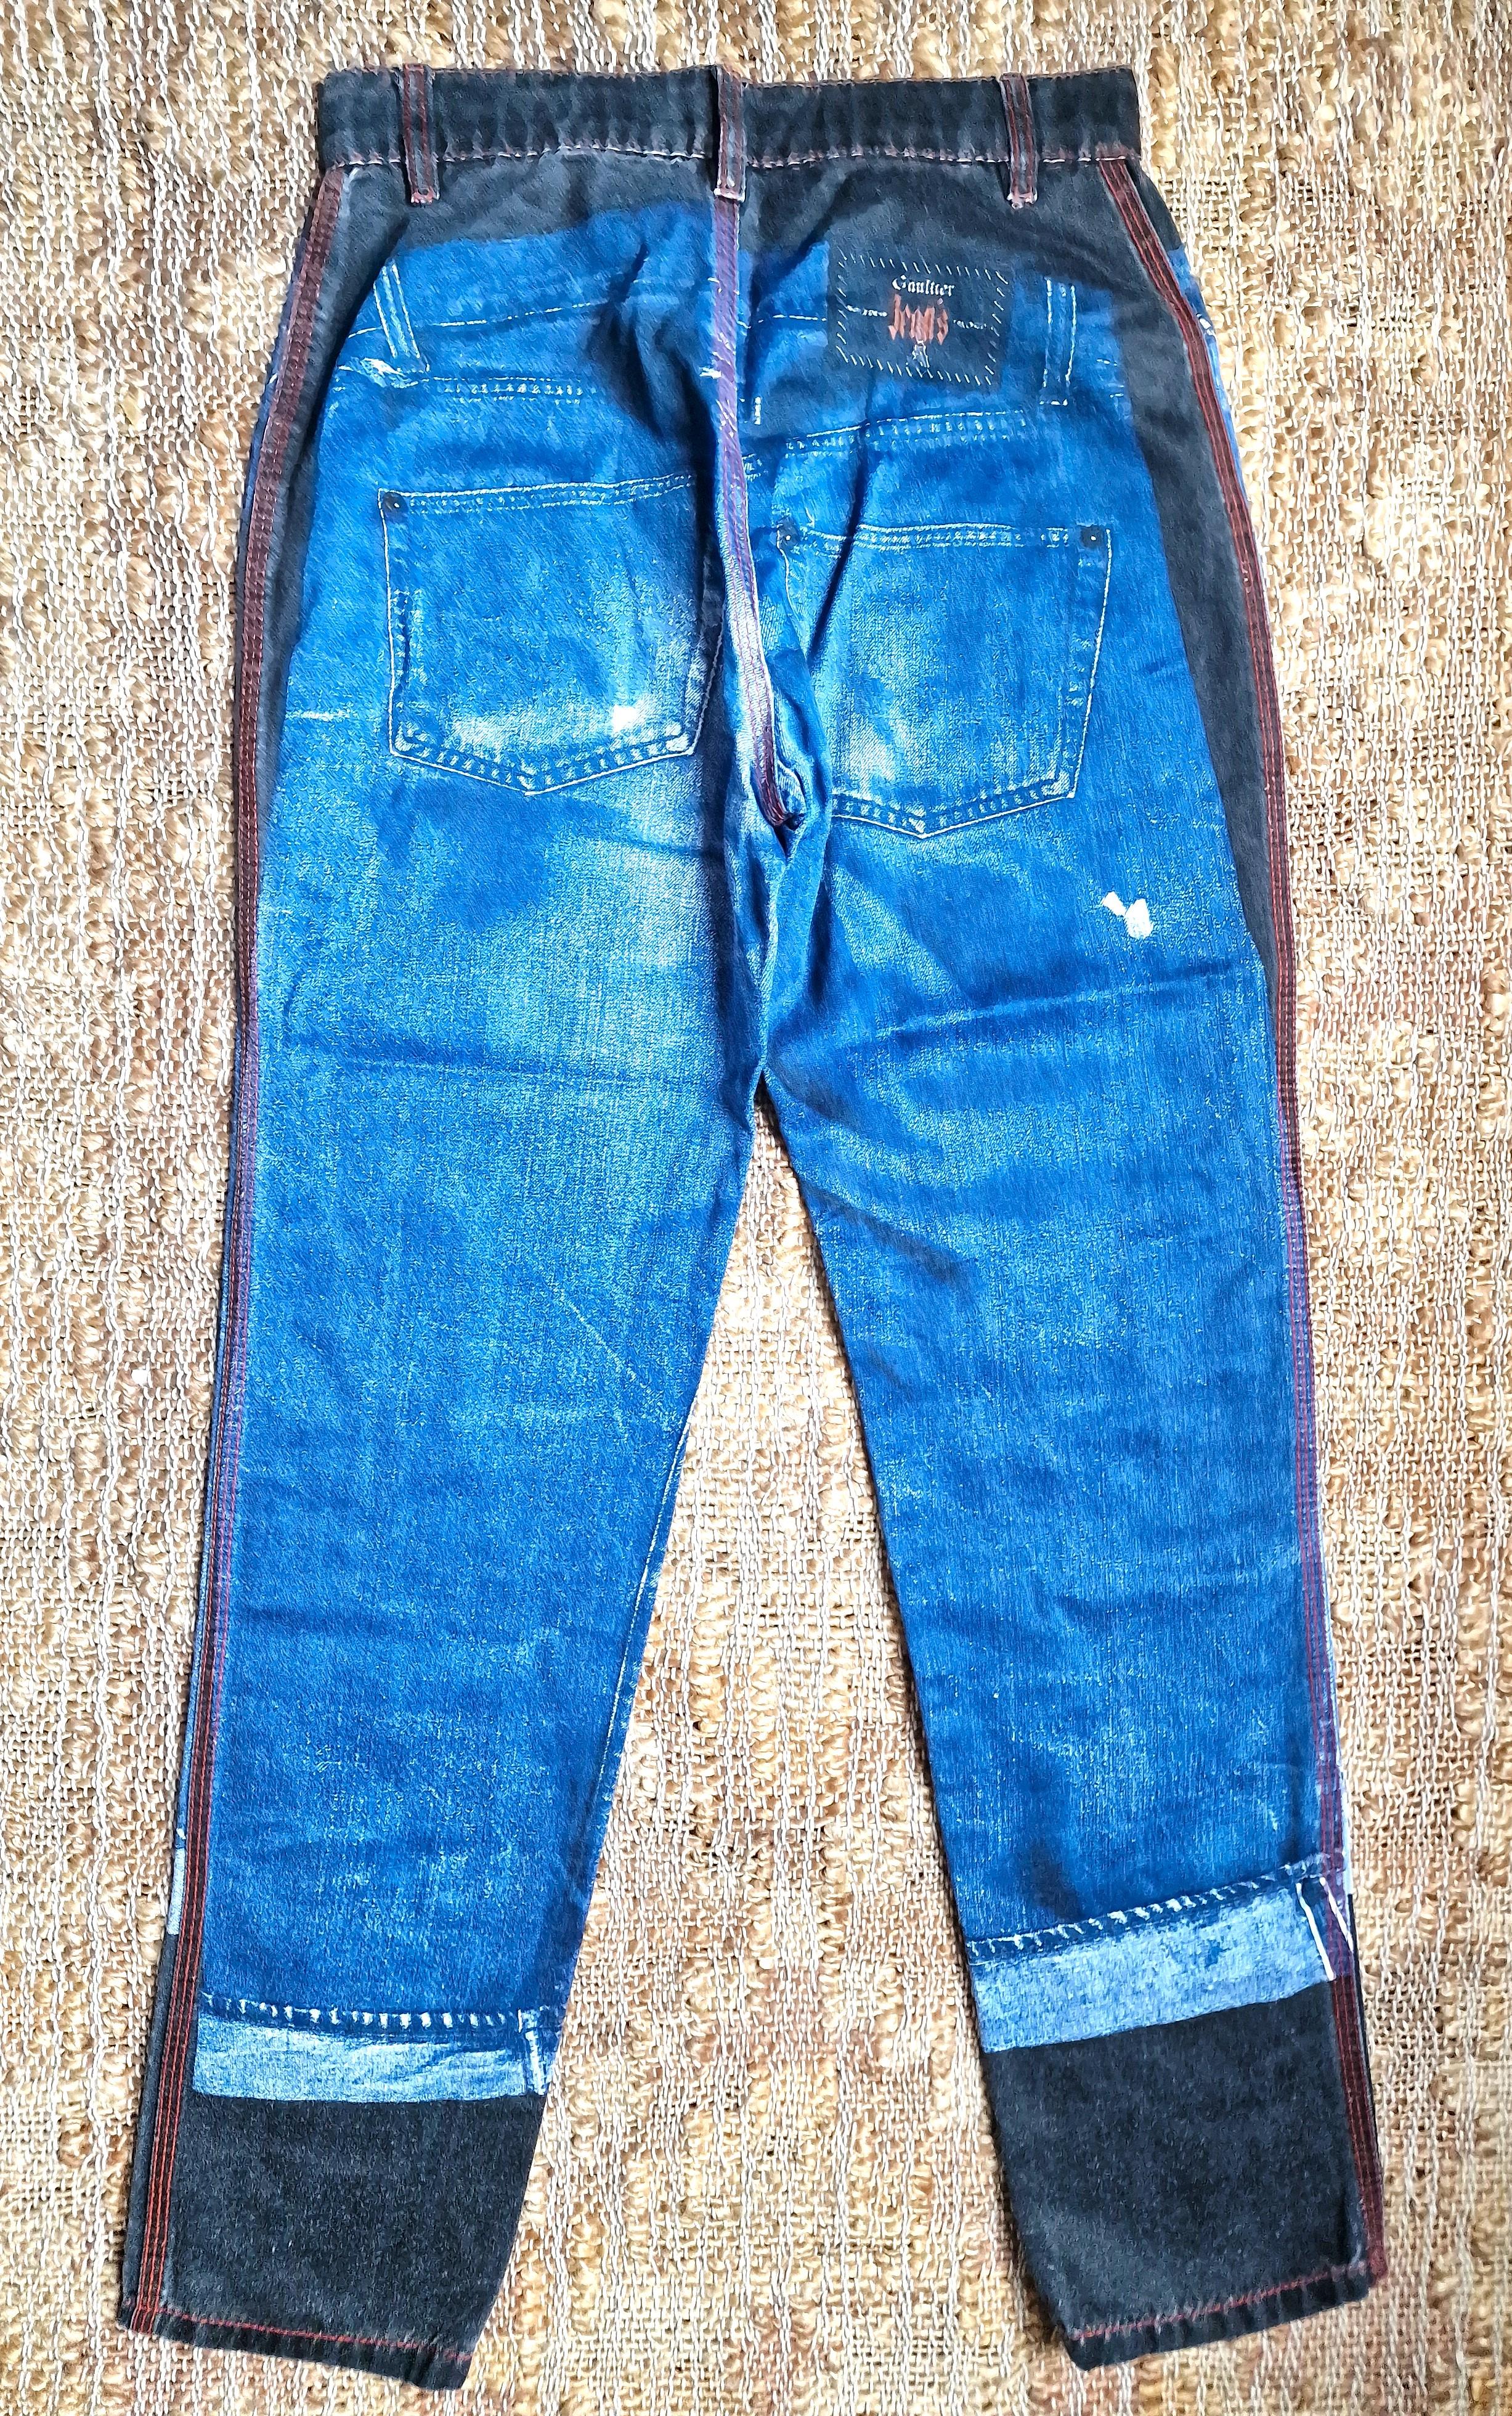 Jean Paul Gaultier Trompe L'Oeil Denim Optical Illusion Vintage Jeans Pants For Sale 3